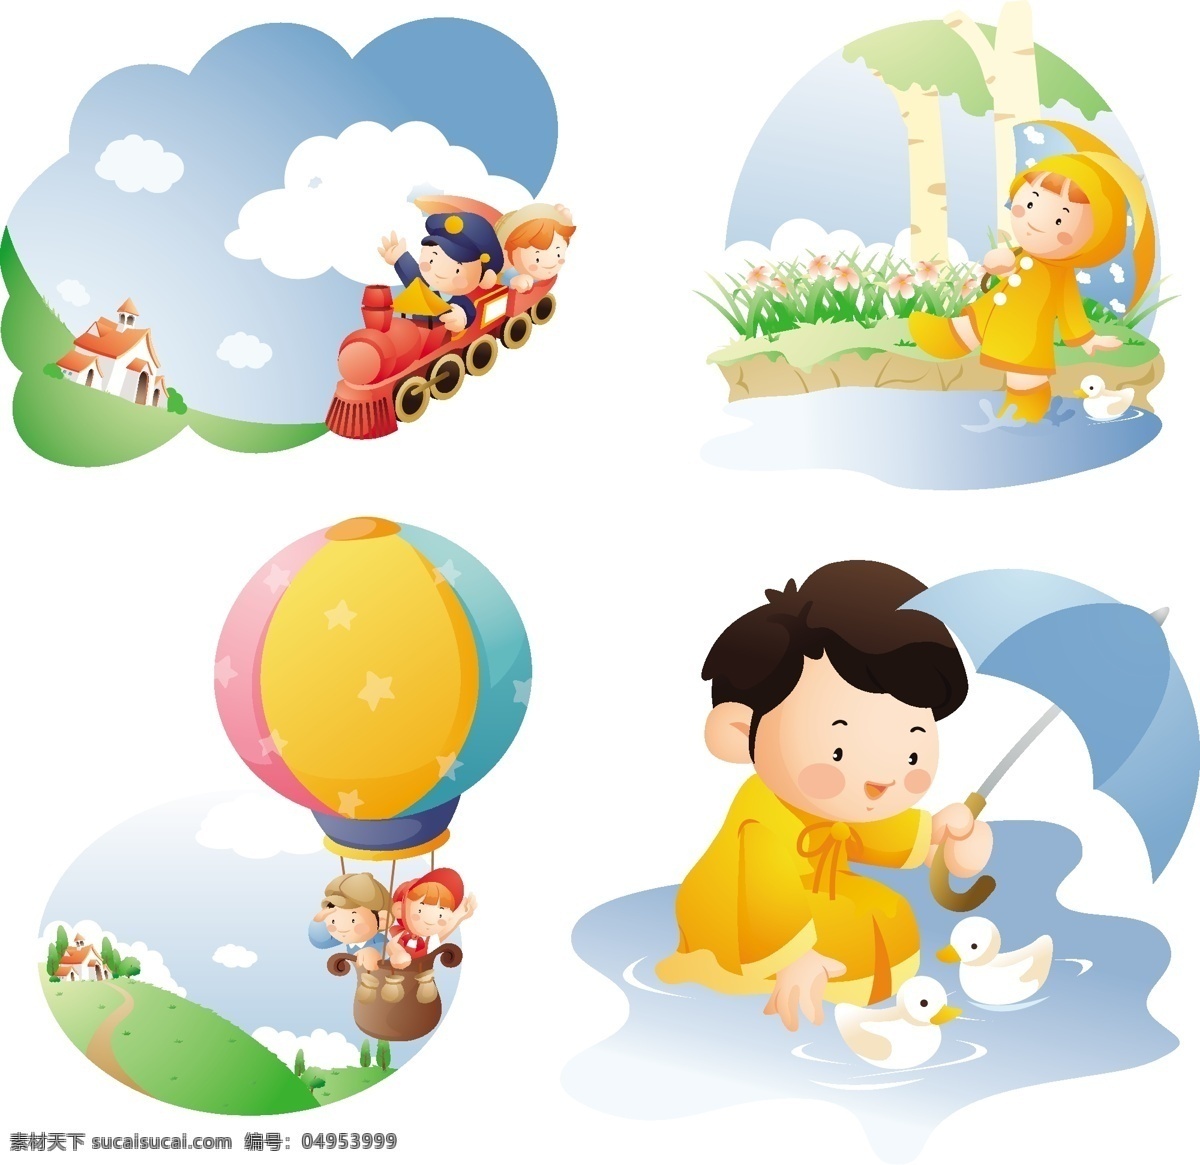 梦想 儿童 世界 背景 蓝天 白云 草地 草坪 玩具 火车 热气球 小屋 鲜花 鸭子 雨伞 快乐 幸福 底纹 矢量 儿童主题 儿童幼儿 矢量人物